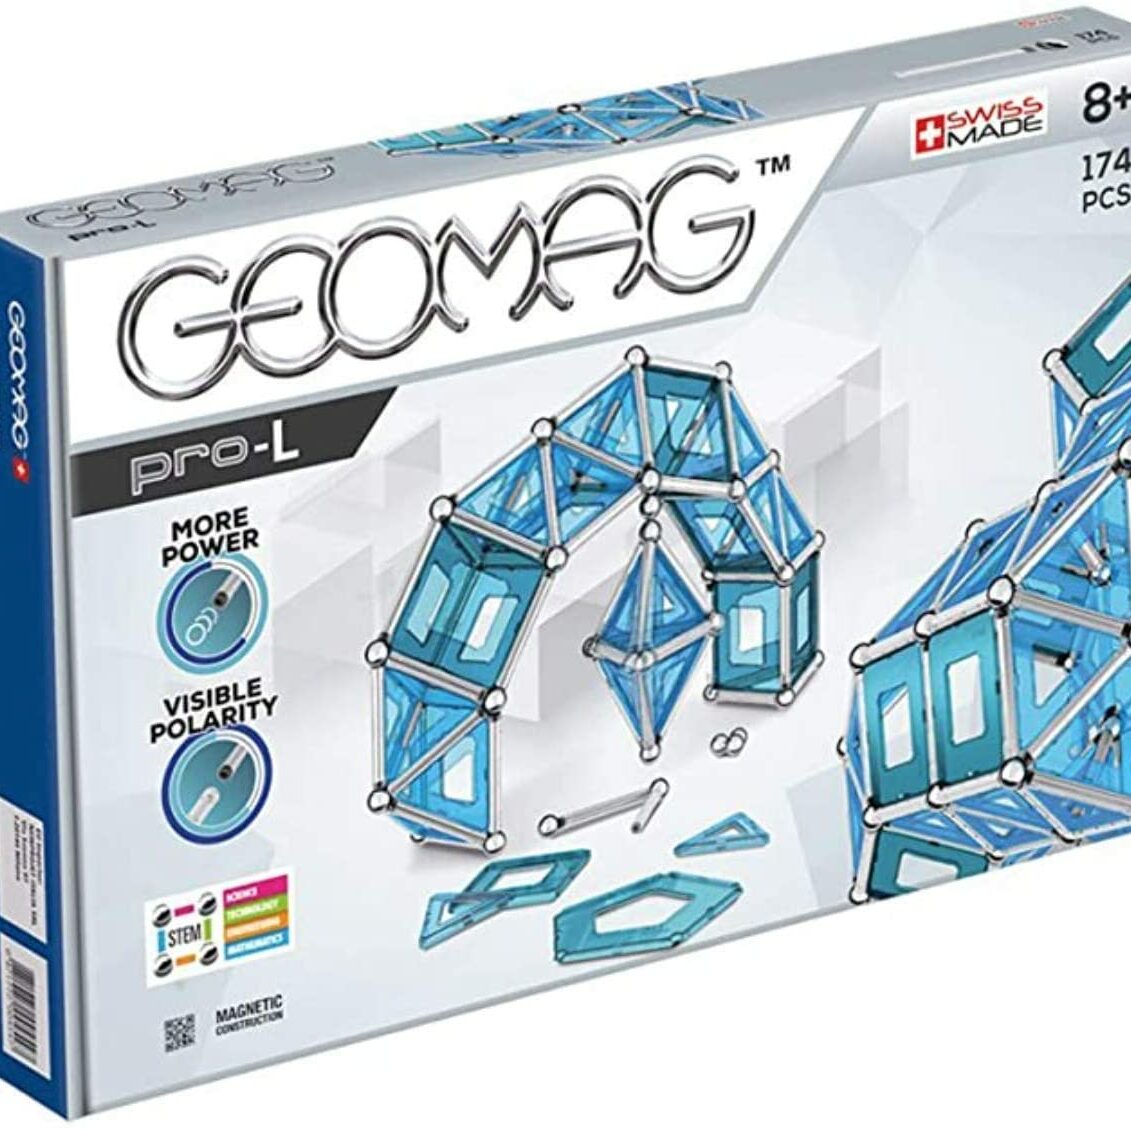 Geomag Pro-L box sensory toys